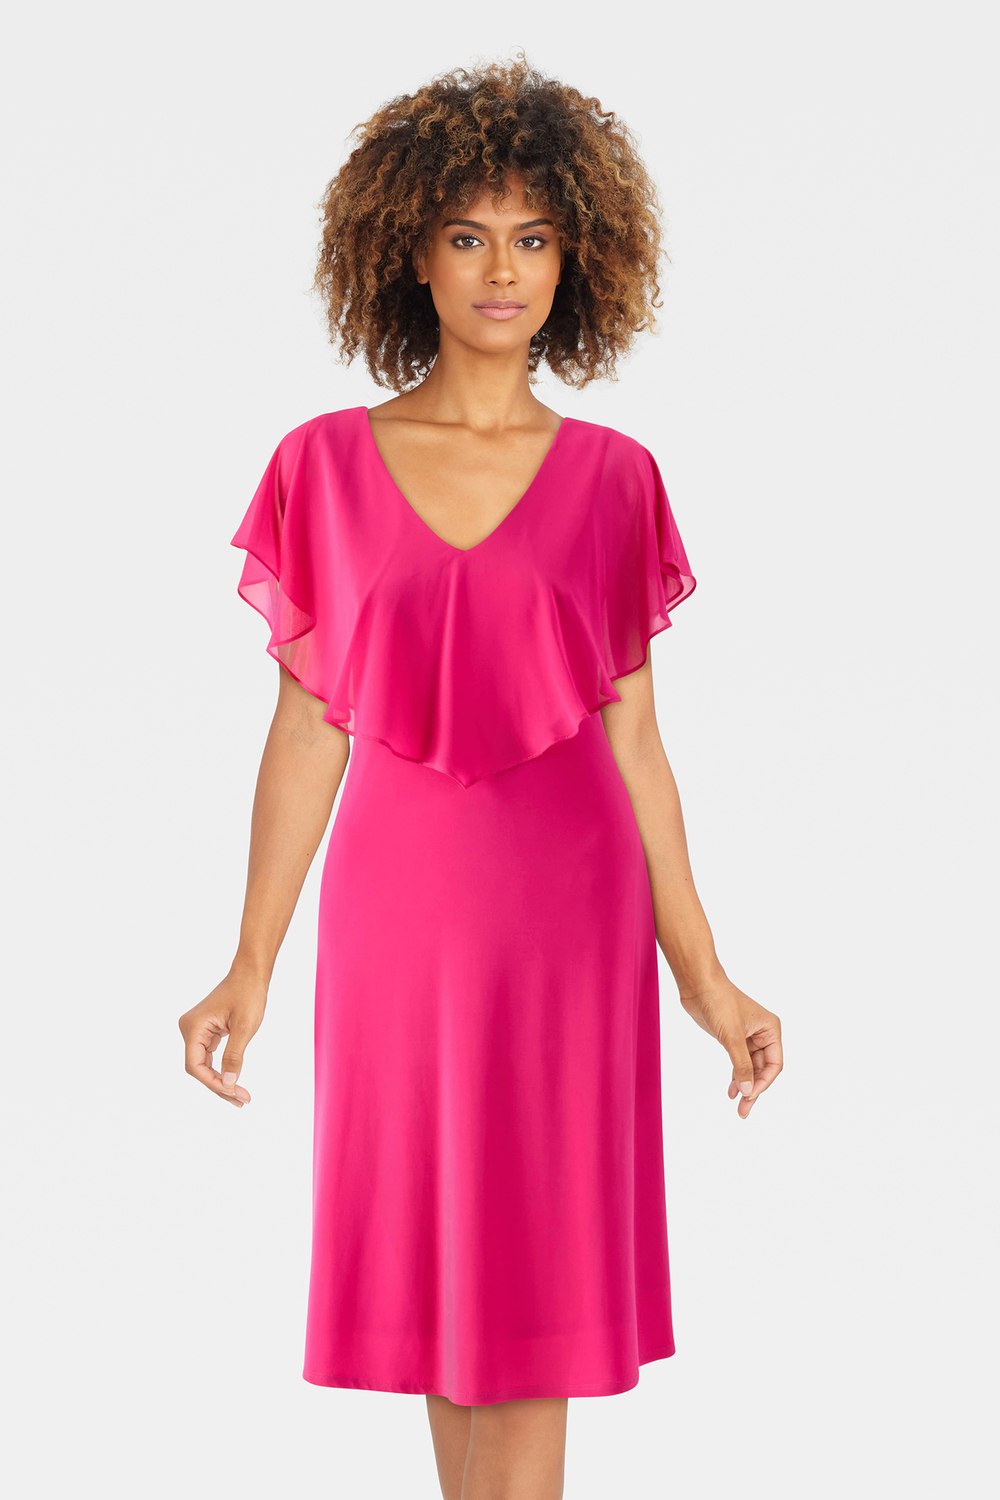 Chiffon Overlay Dress Style 232240. Dazzle Pink